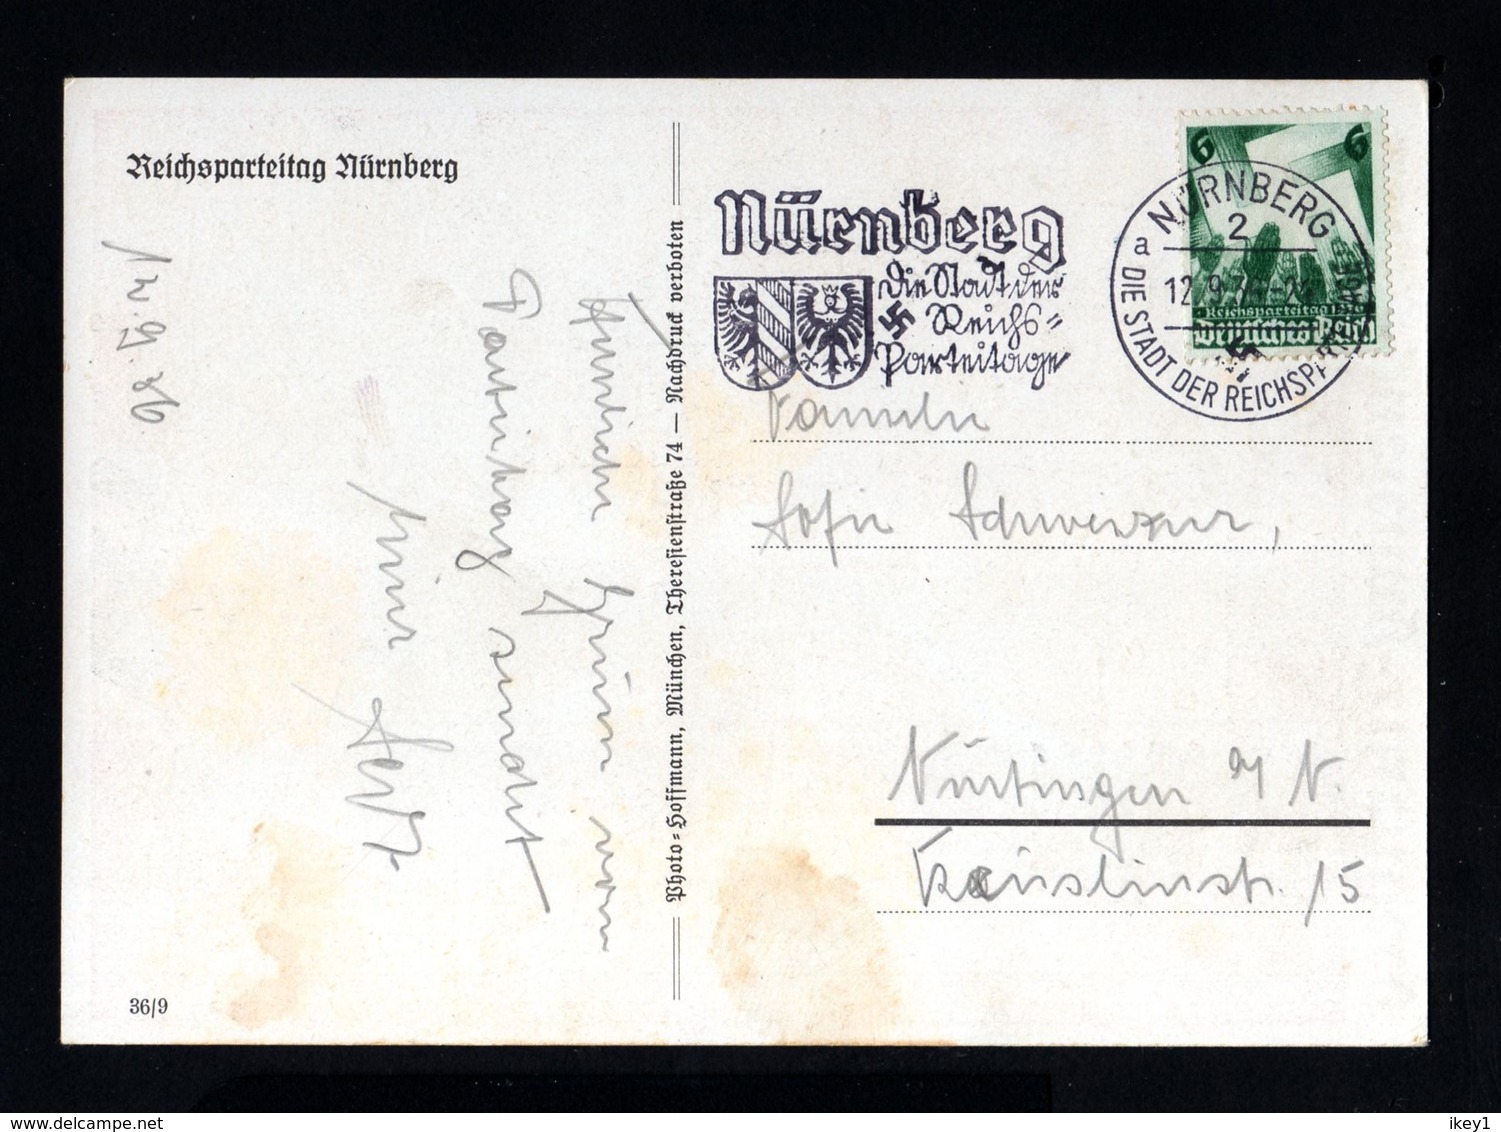 00001-GERMAN EMPIRE-MILITARY PROPAGANDA POSTCARD REICHSPARTEITAGE Nurnberg.1936.WWII.DEUTSCHES REICH.Postkarte. - Weltkrieg 1939-45